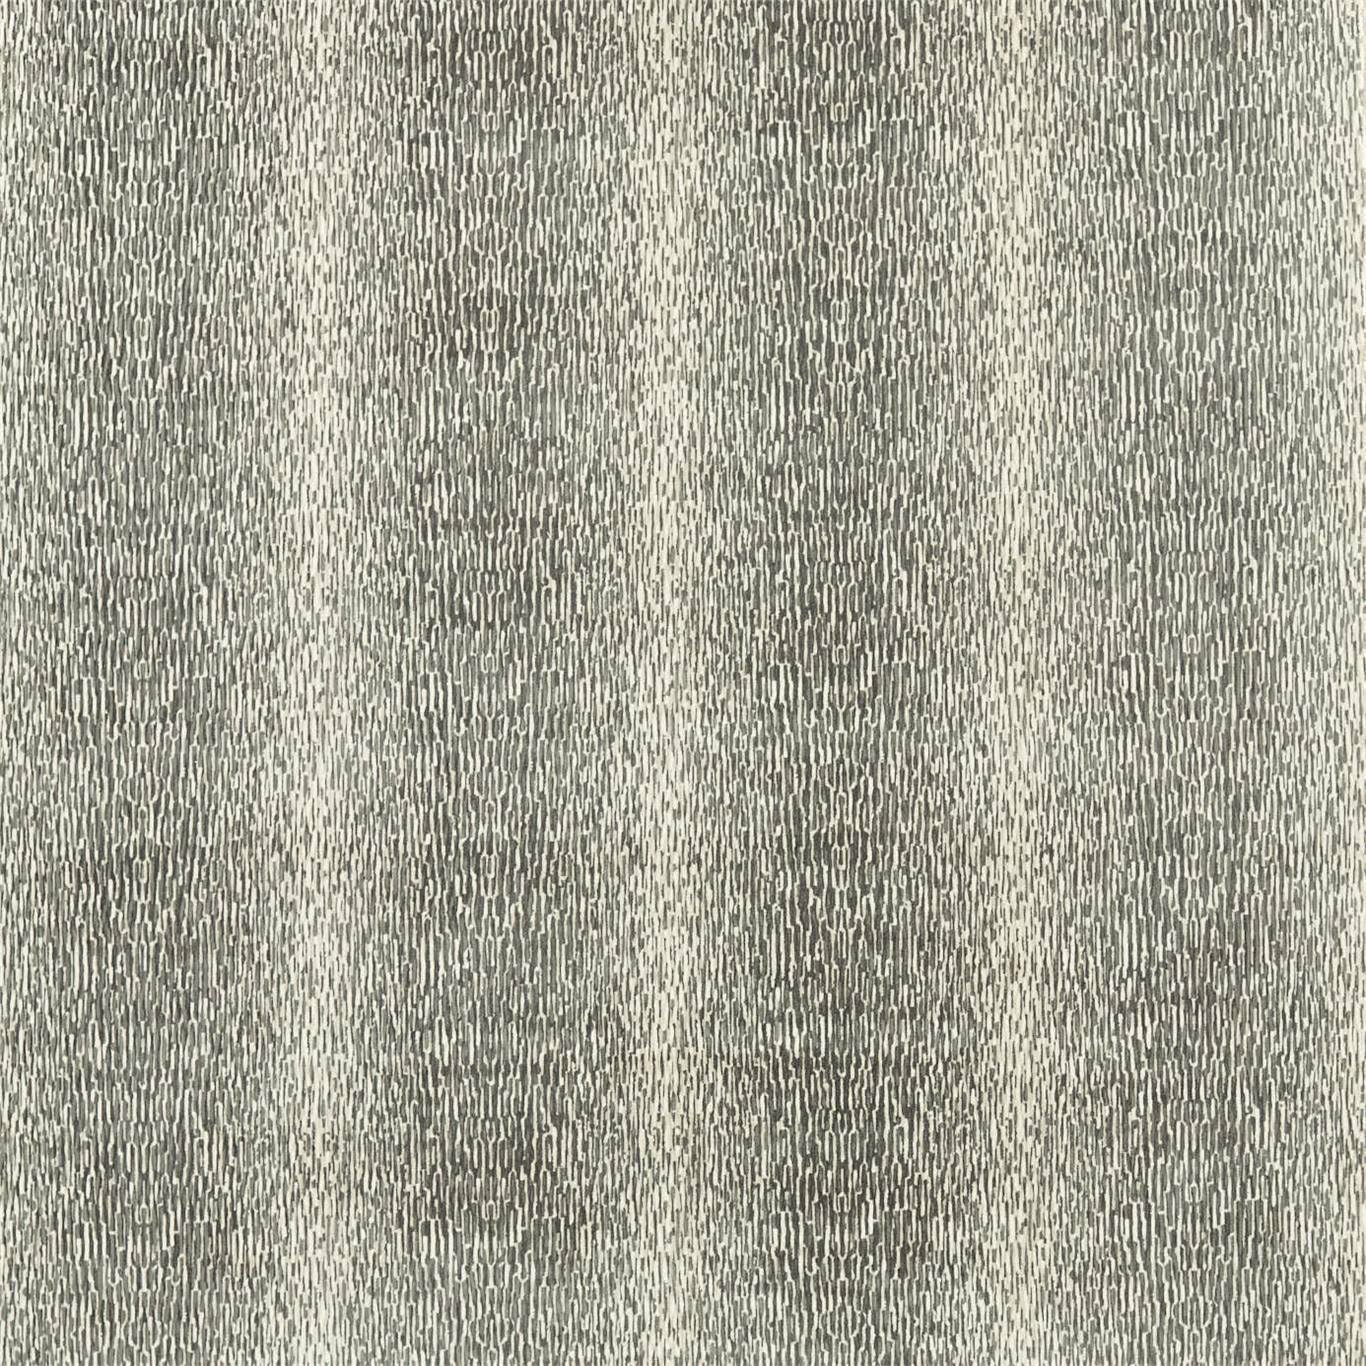 Niello Graphite Fabric by HAR